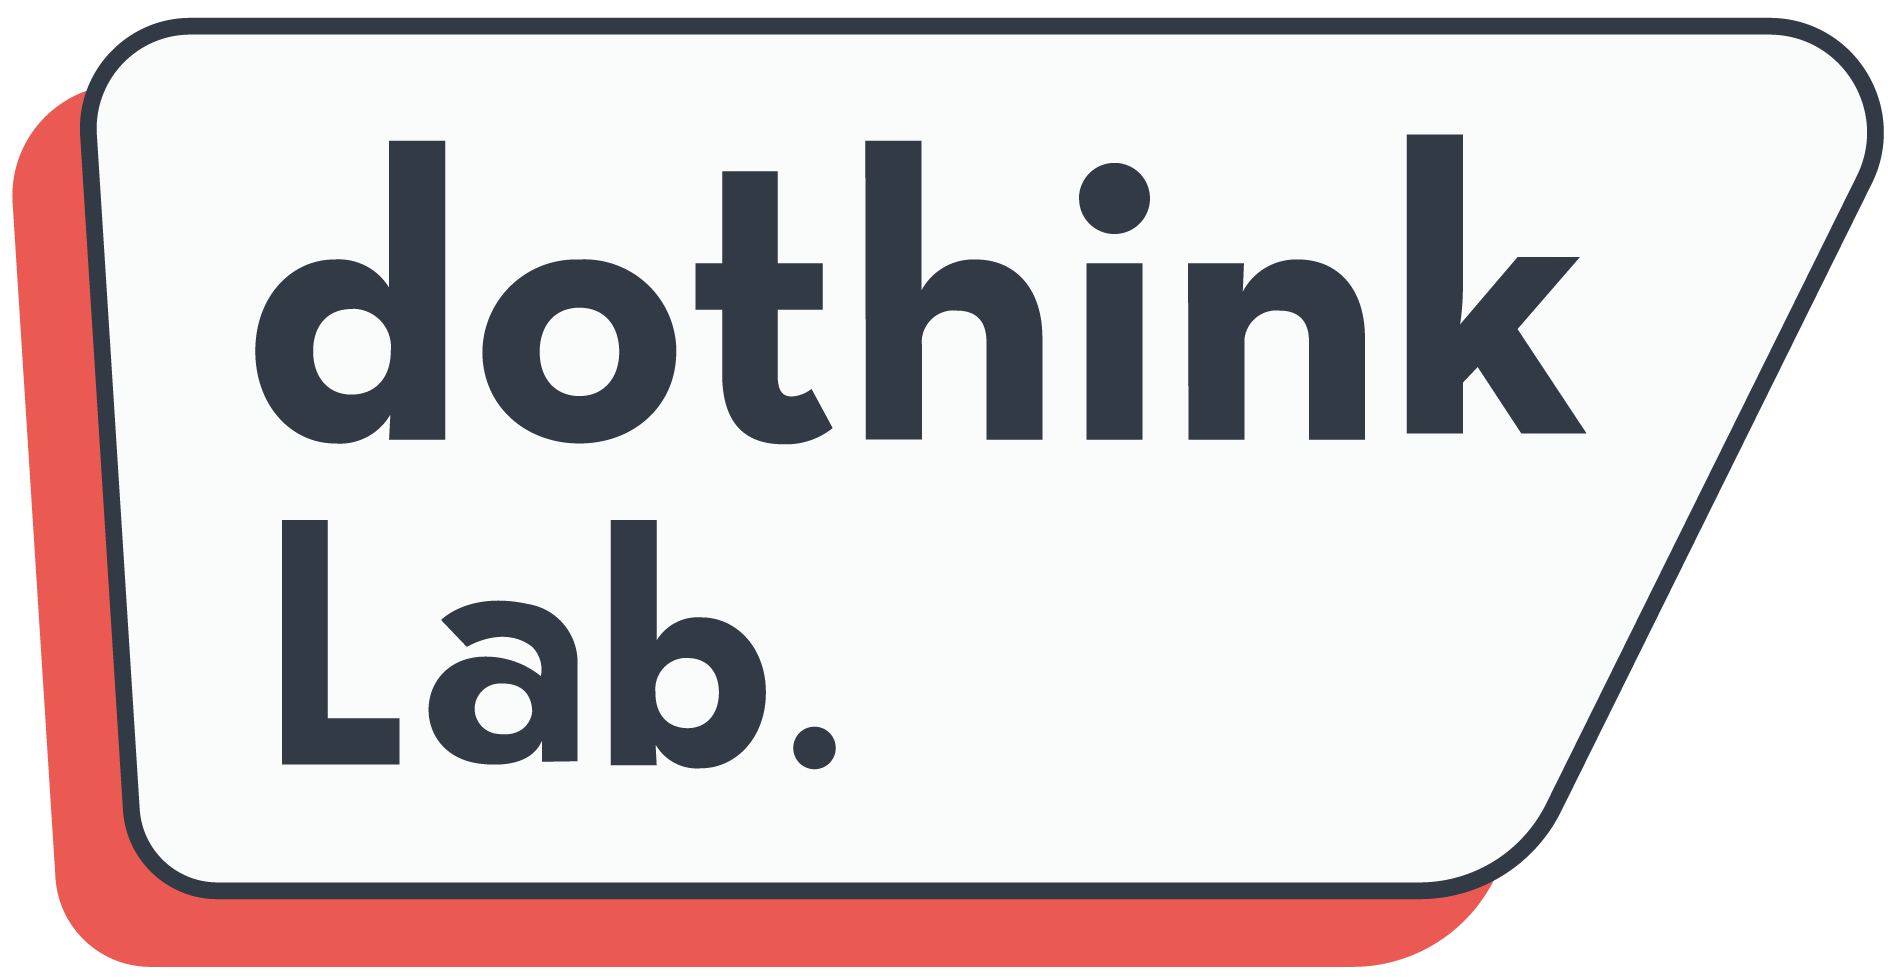 DothinkLab.com